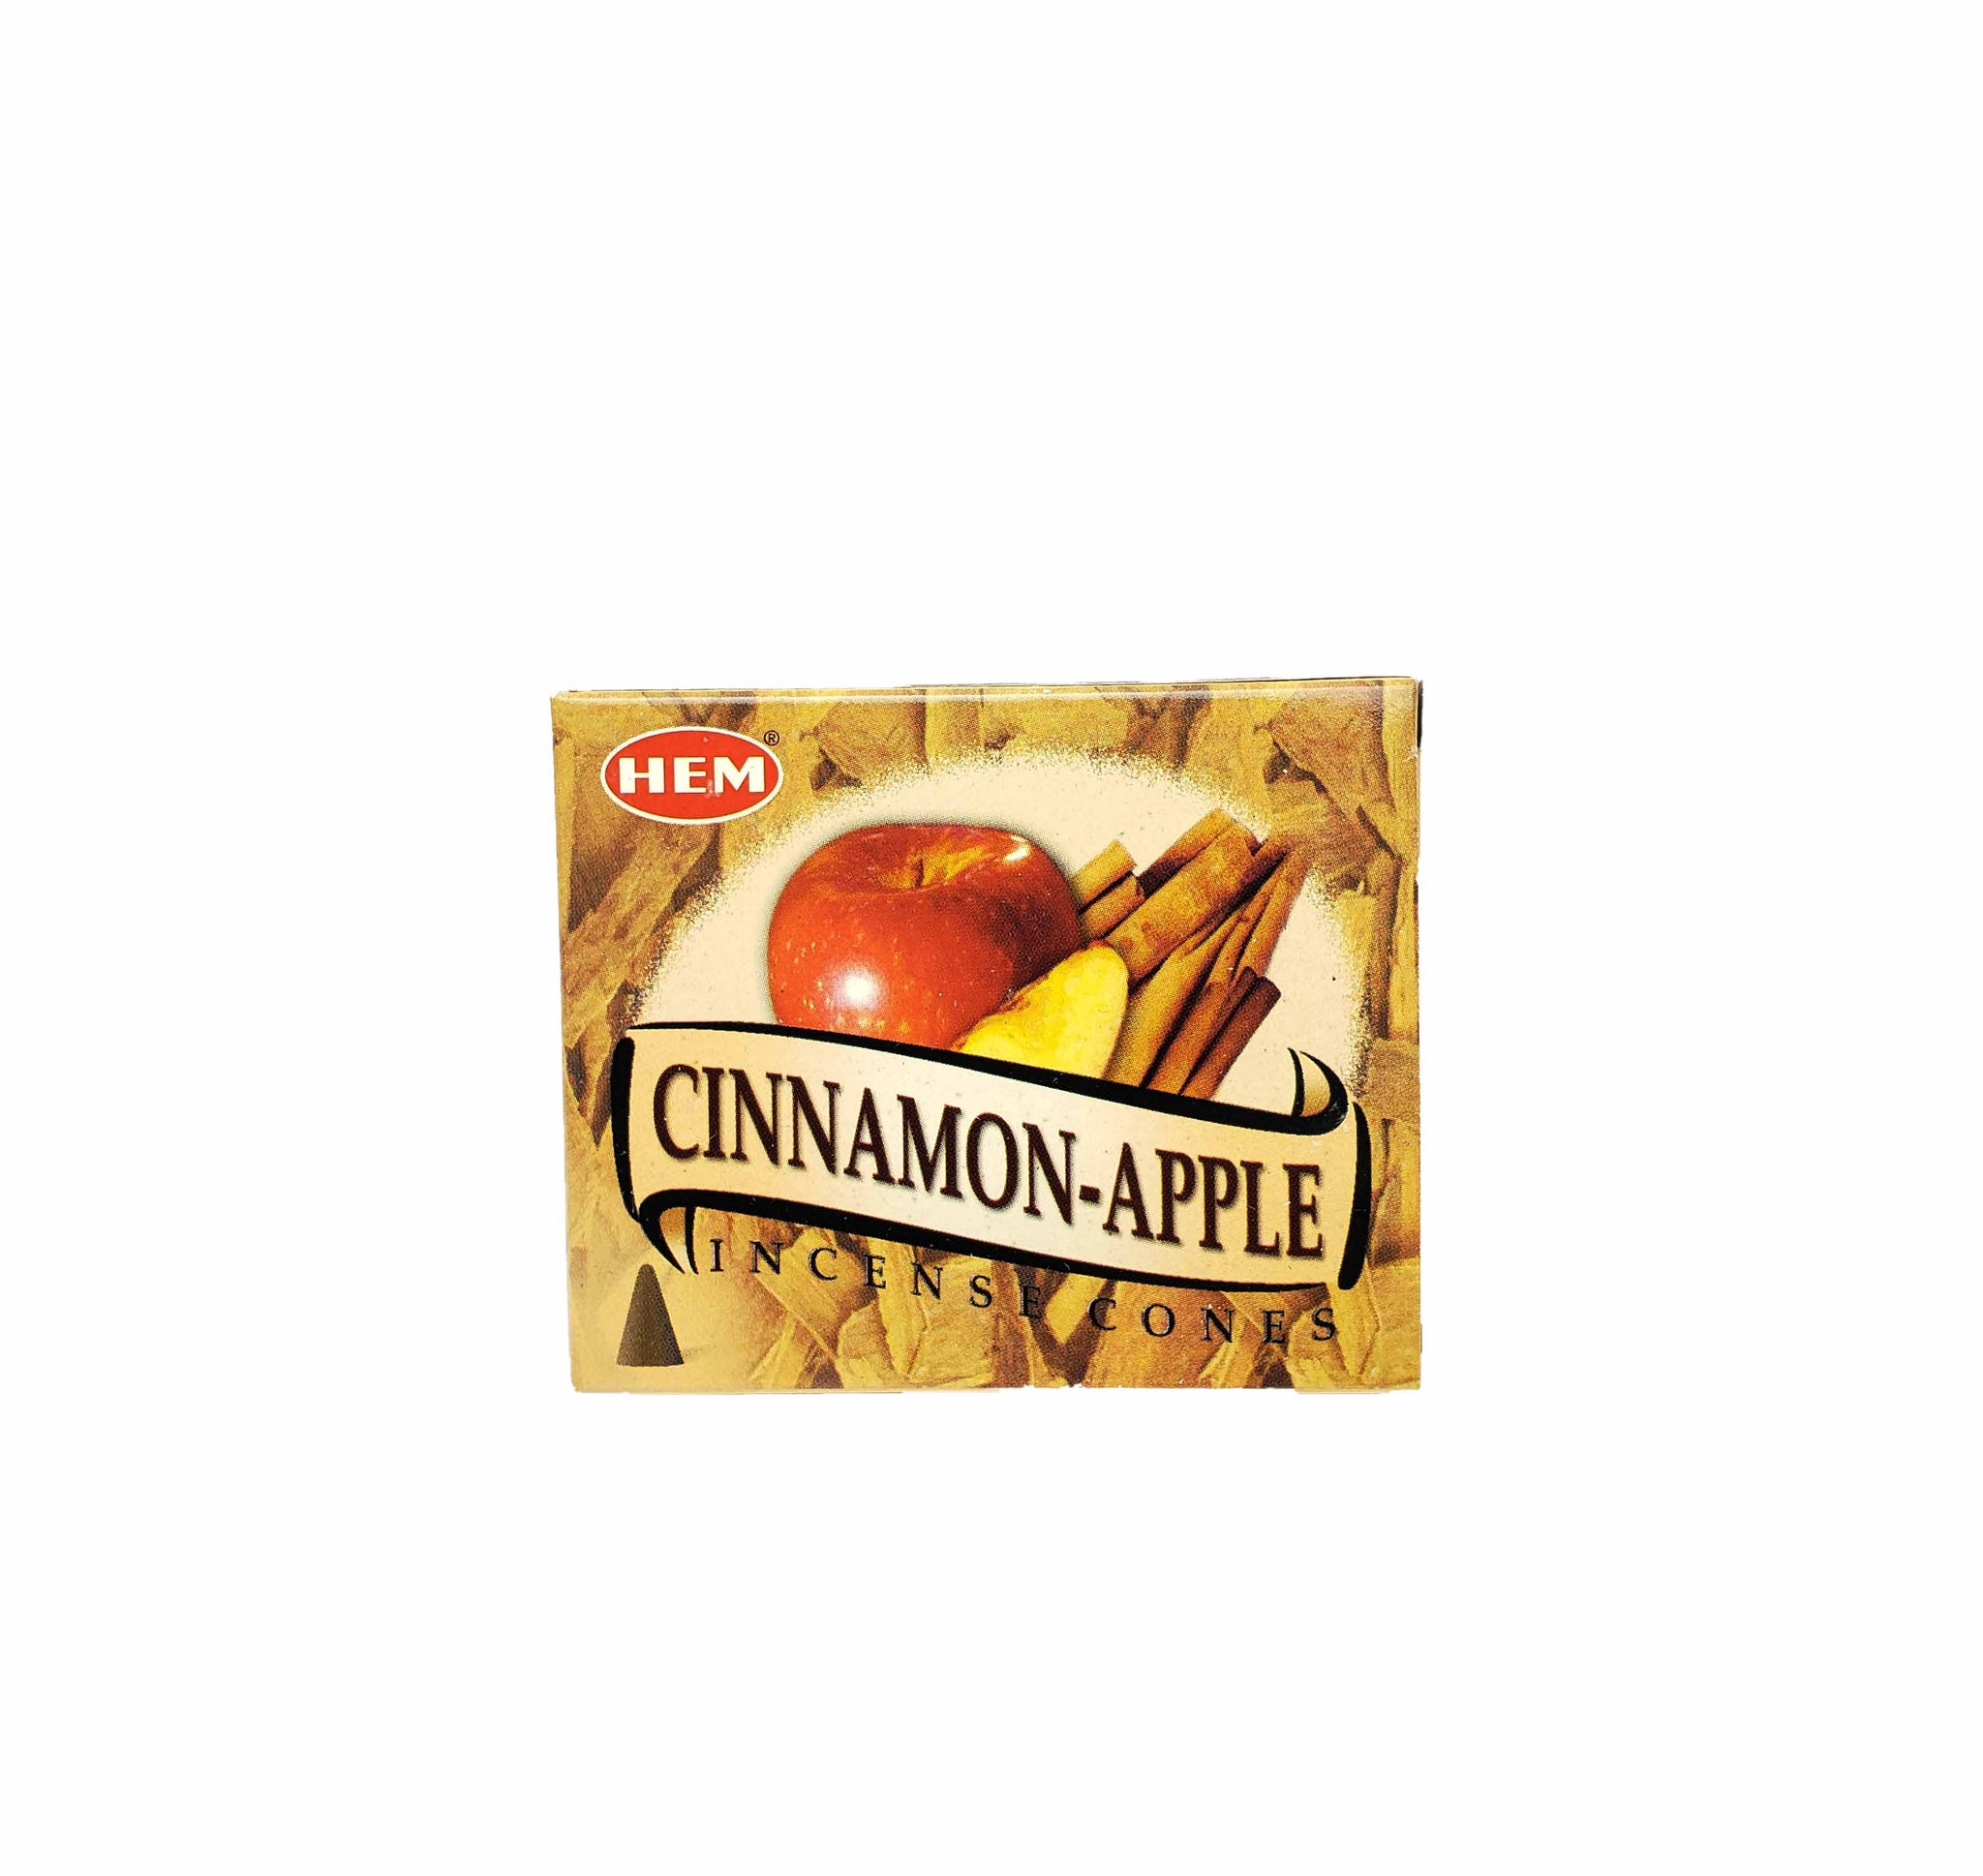 Cinnamon-Apple Incense Cones